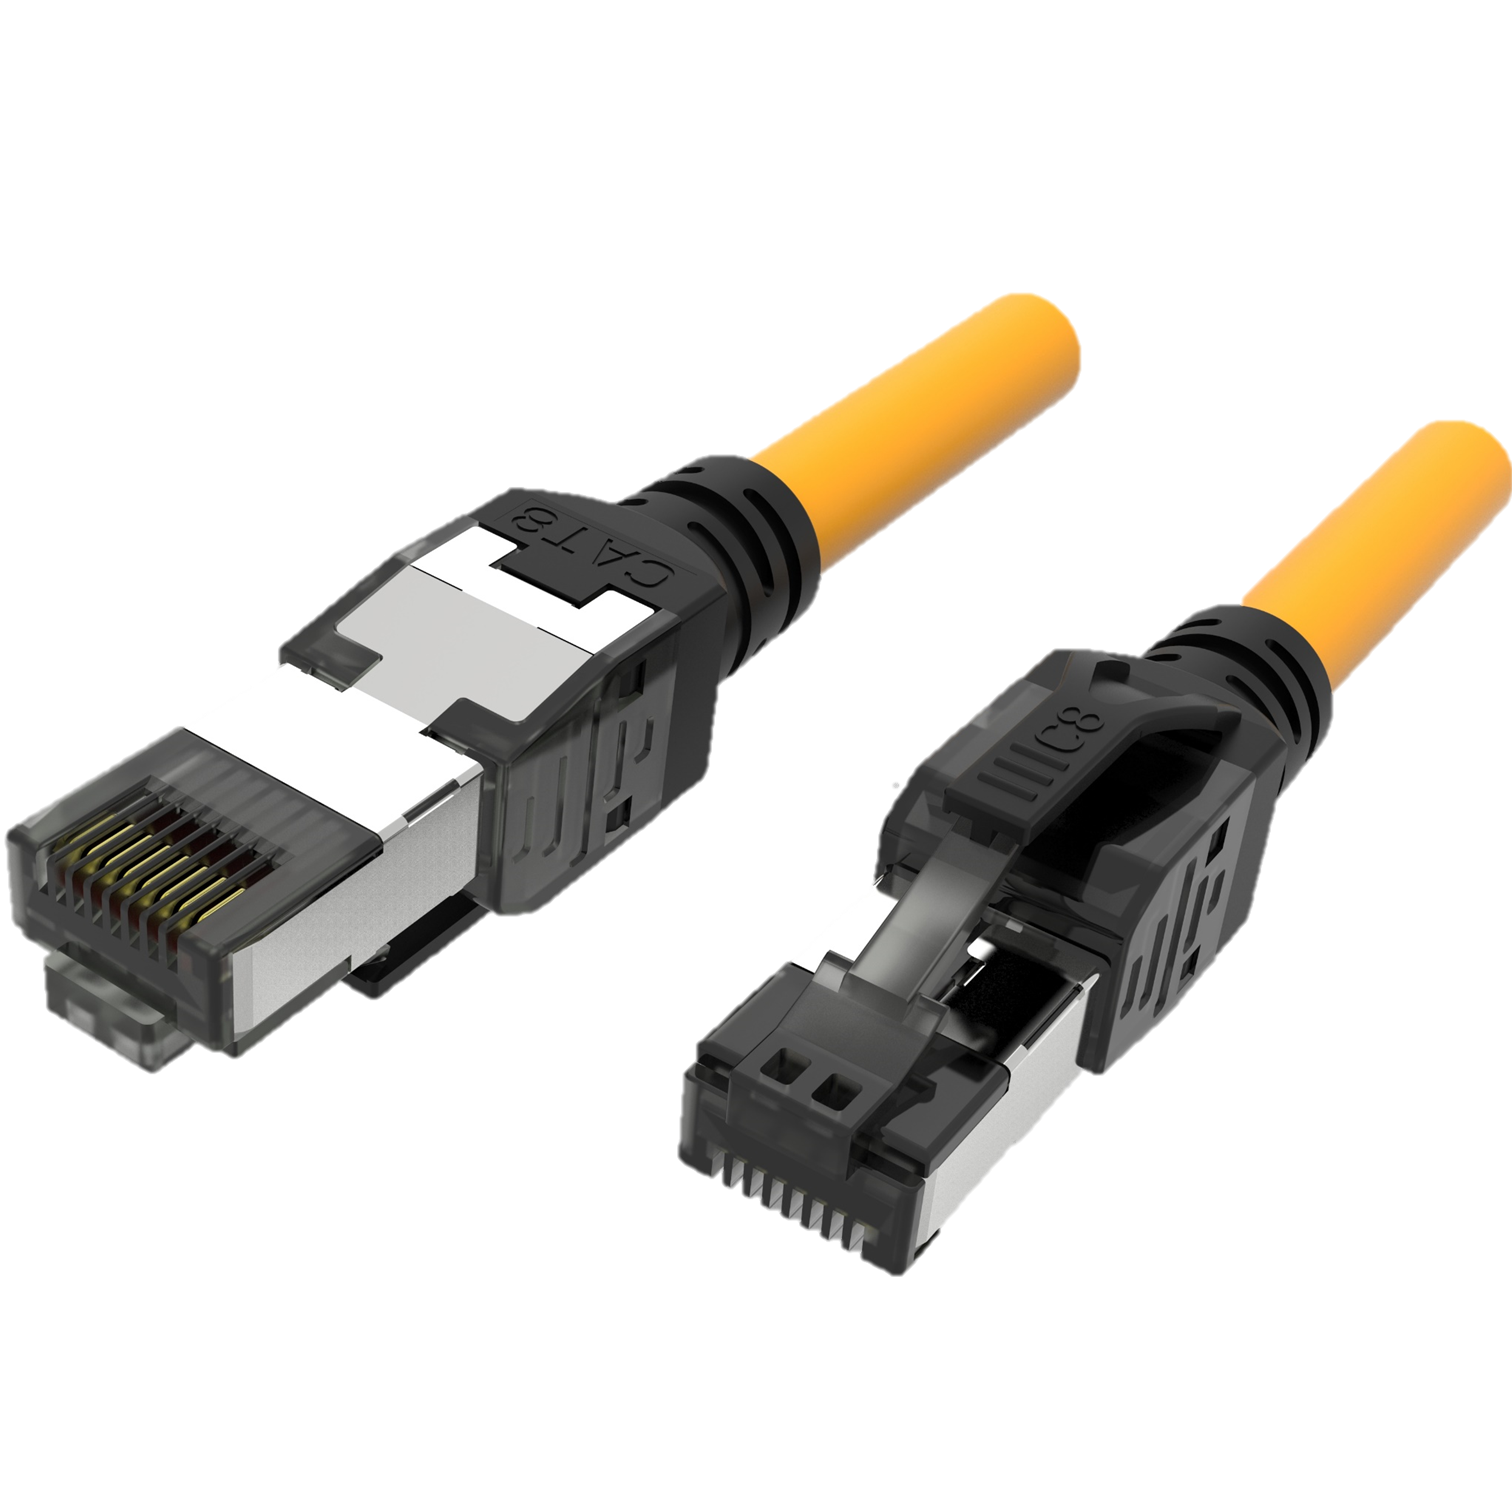 Cable Ethernet Cat.8, Soluciones de cableado de cobre de alta calidad para  un rendimiento de red mejorado